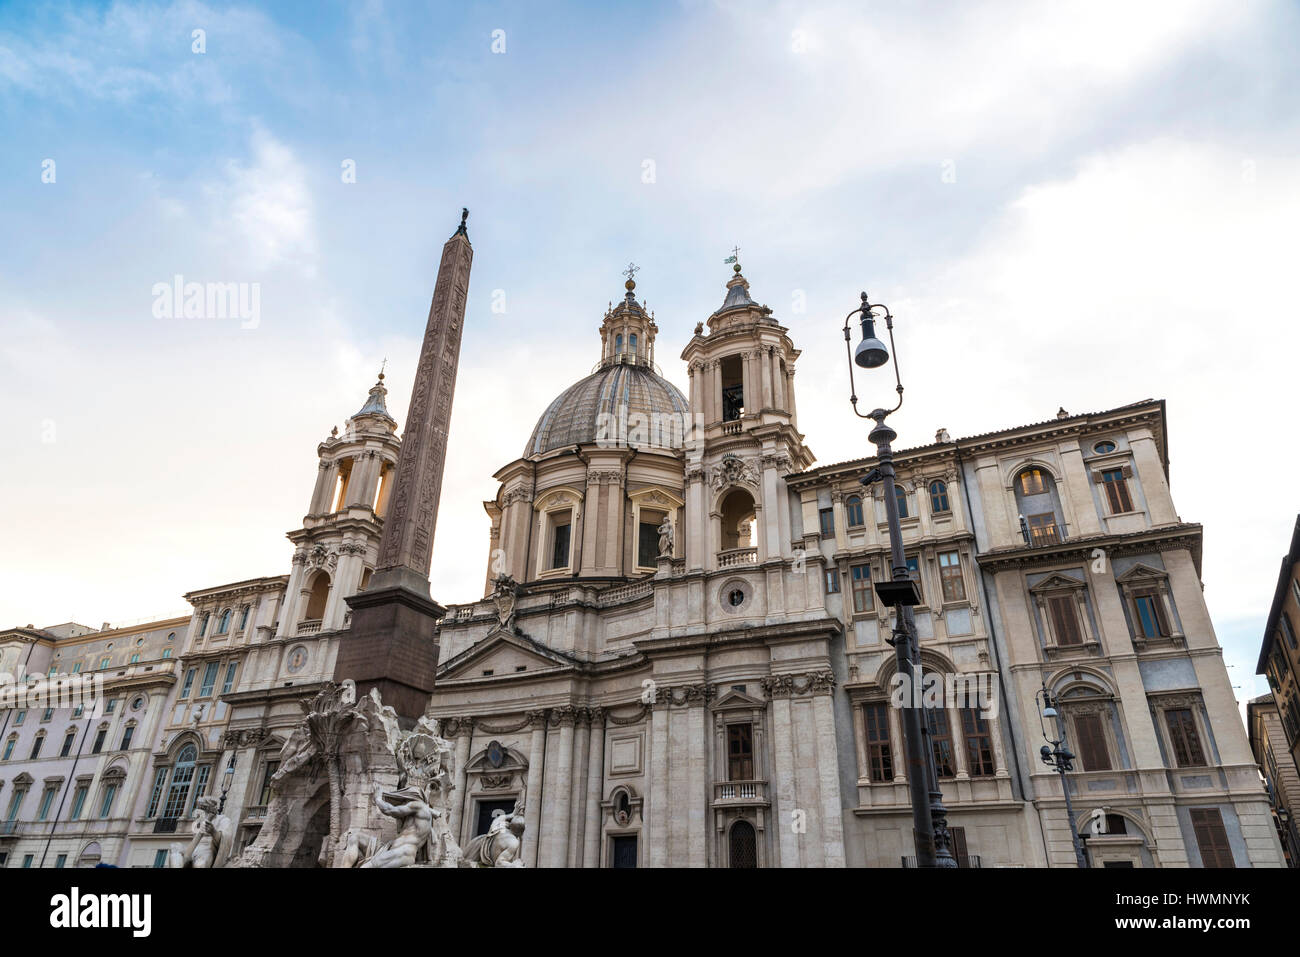 Chiesa di Santa Agnese in Agone (Sant Agnese in agonia) in Piazza Navona roma in pieno centro storico di Roma, Italia Foto Stock